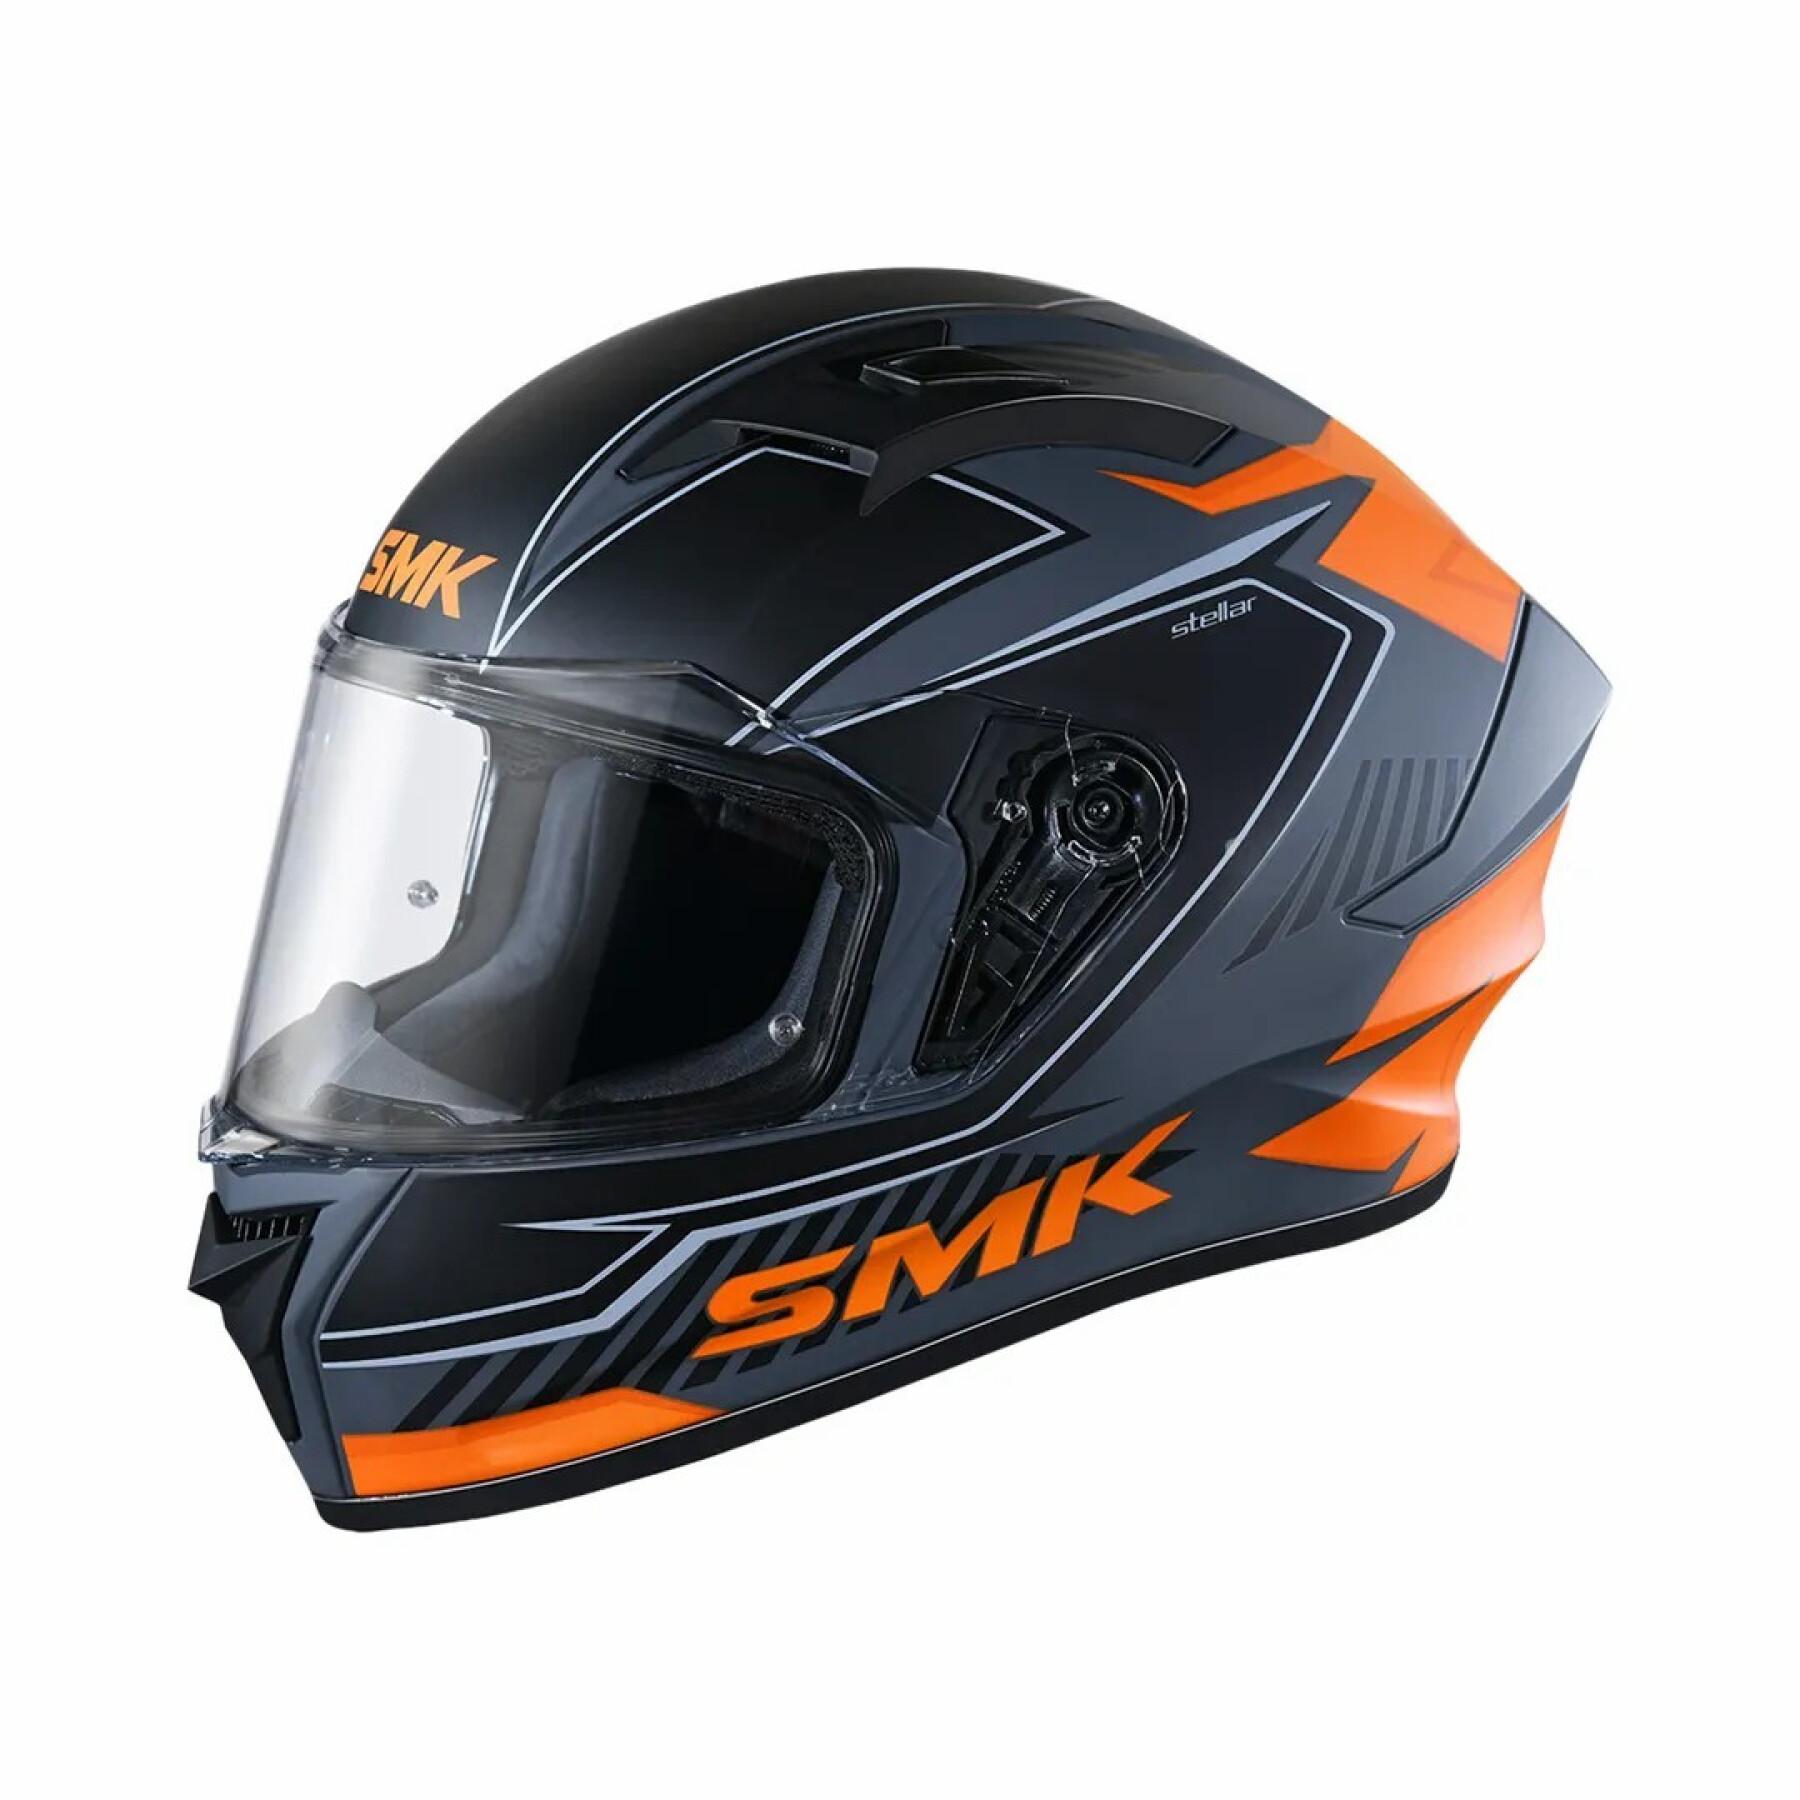 Full face motorcycle helmet SMK Stellar Ado